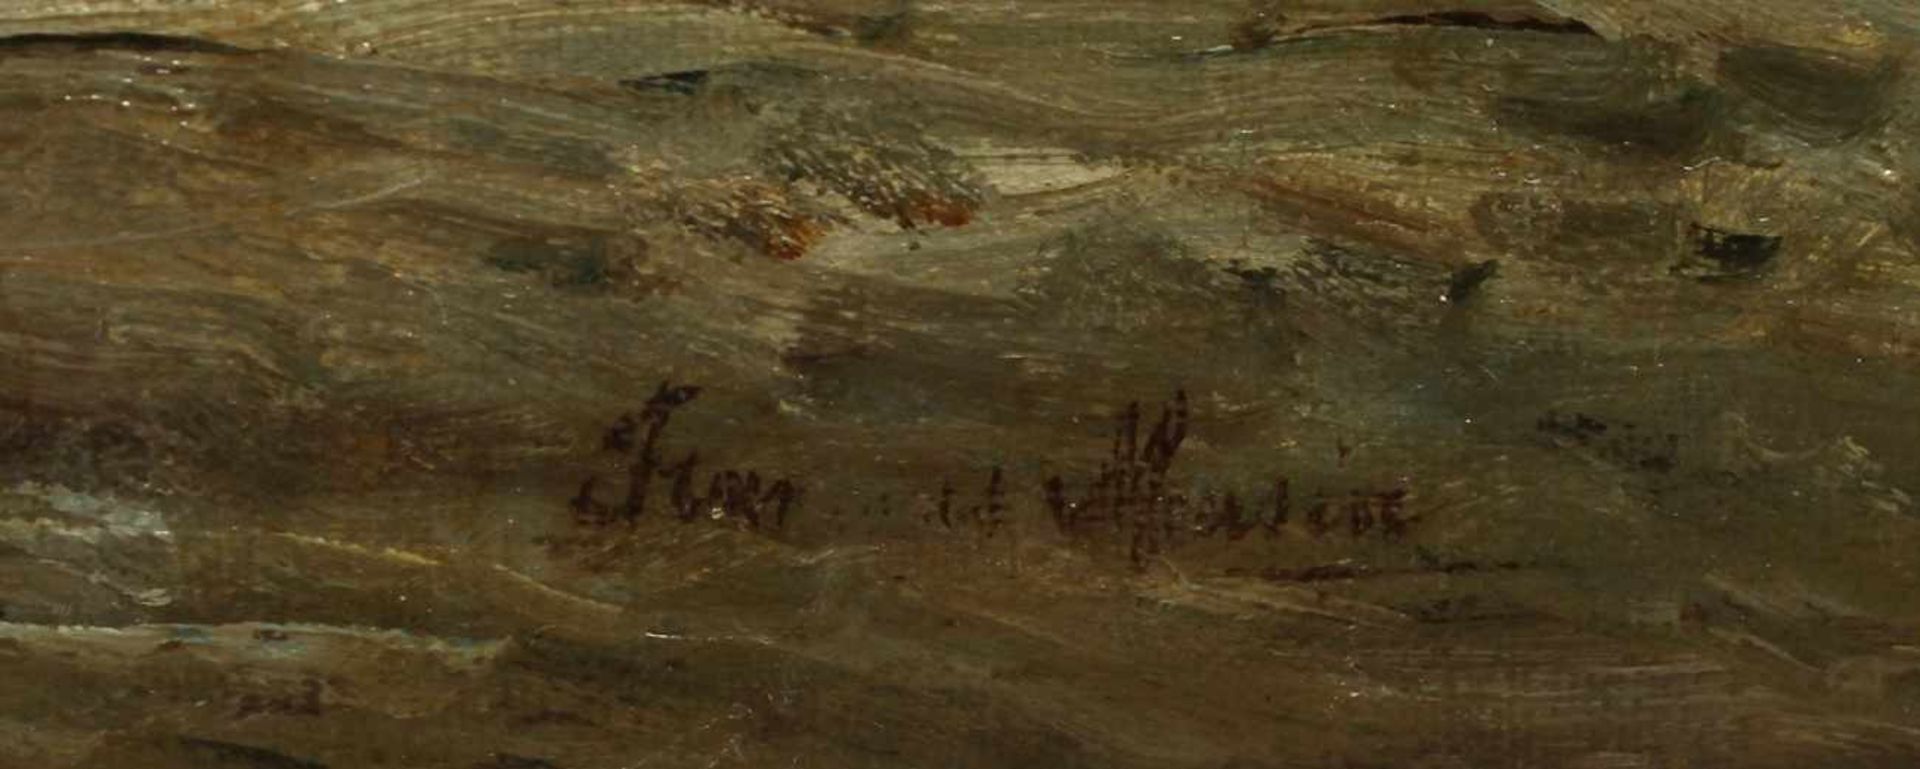 Unleserlich signierender Maler, 1. Hälfte 20. Jh. "Fischerboote auf See", Öl/Lw., 40 x 60cm - Bild 2 aus 2